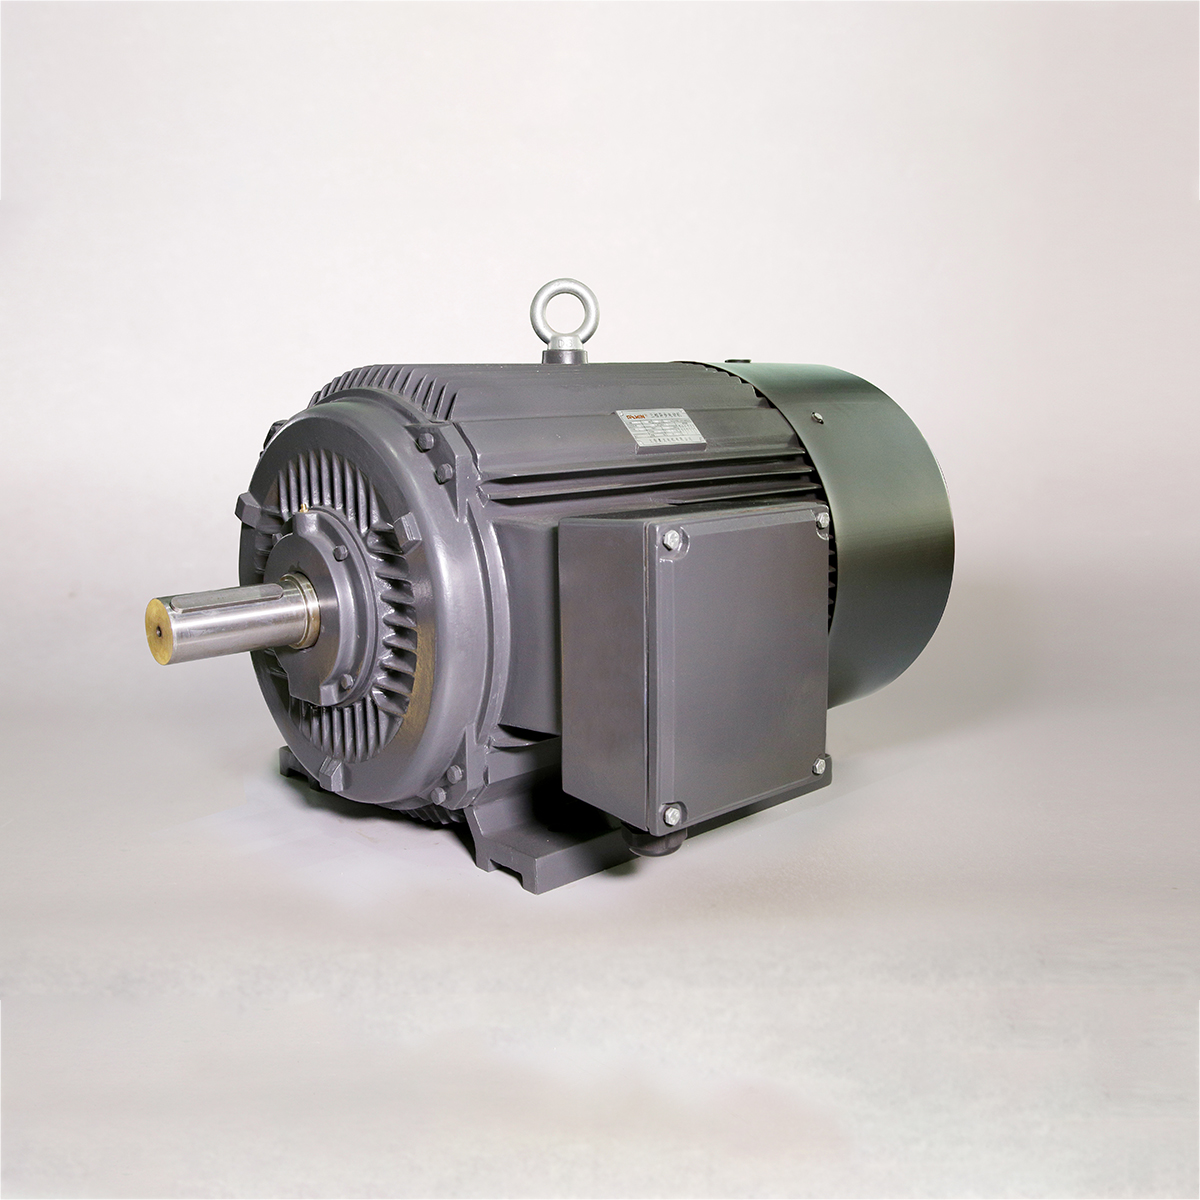 Yakaderera Voltage 3-Phase Asynchronous Motor ine Cast Iron Housing Featured Image